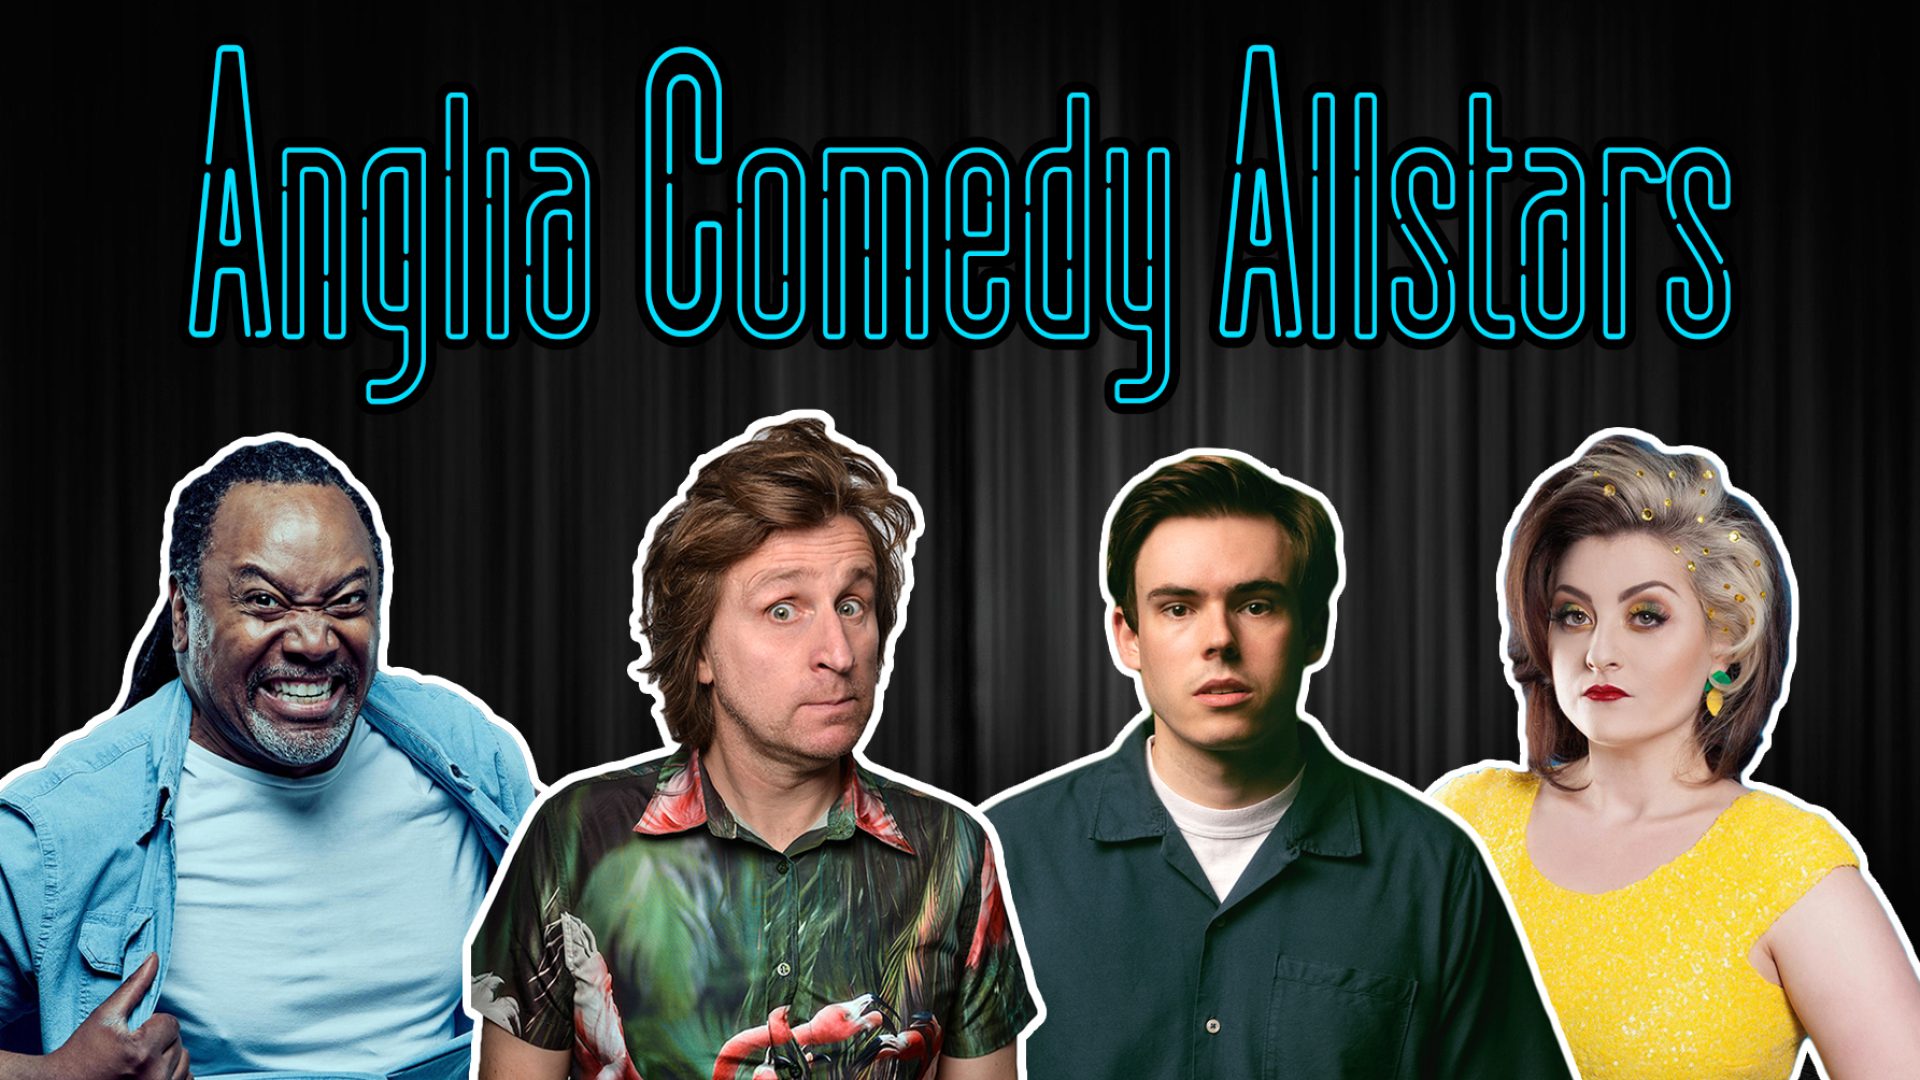 The Anglia Comedy Allstars